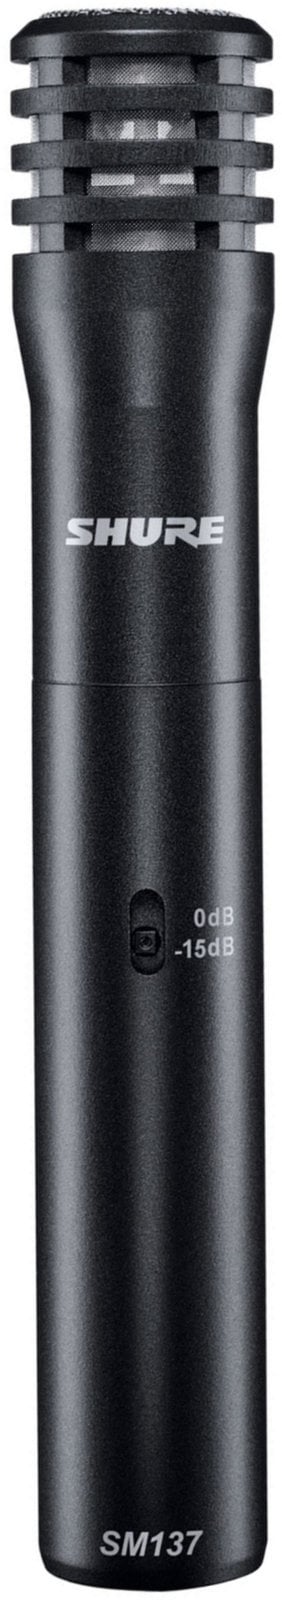 Kondezatorski mikrofon za instrumente Shure SM137